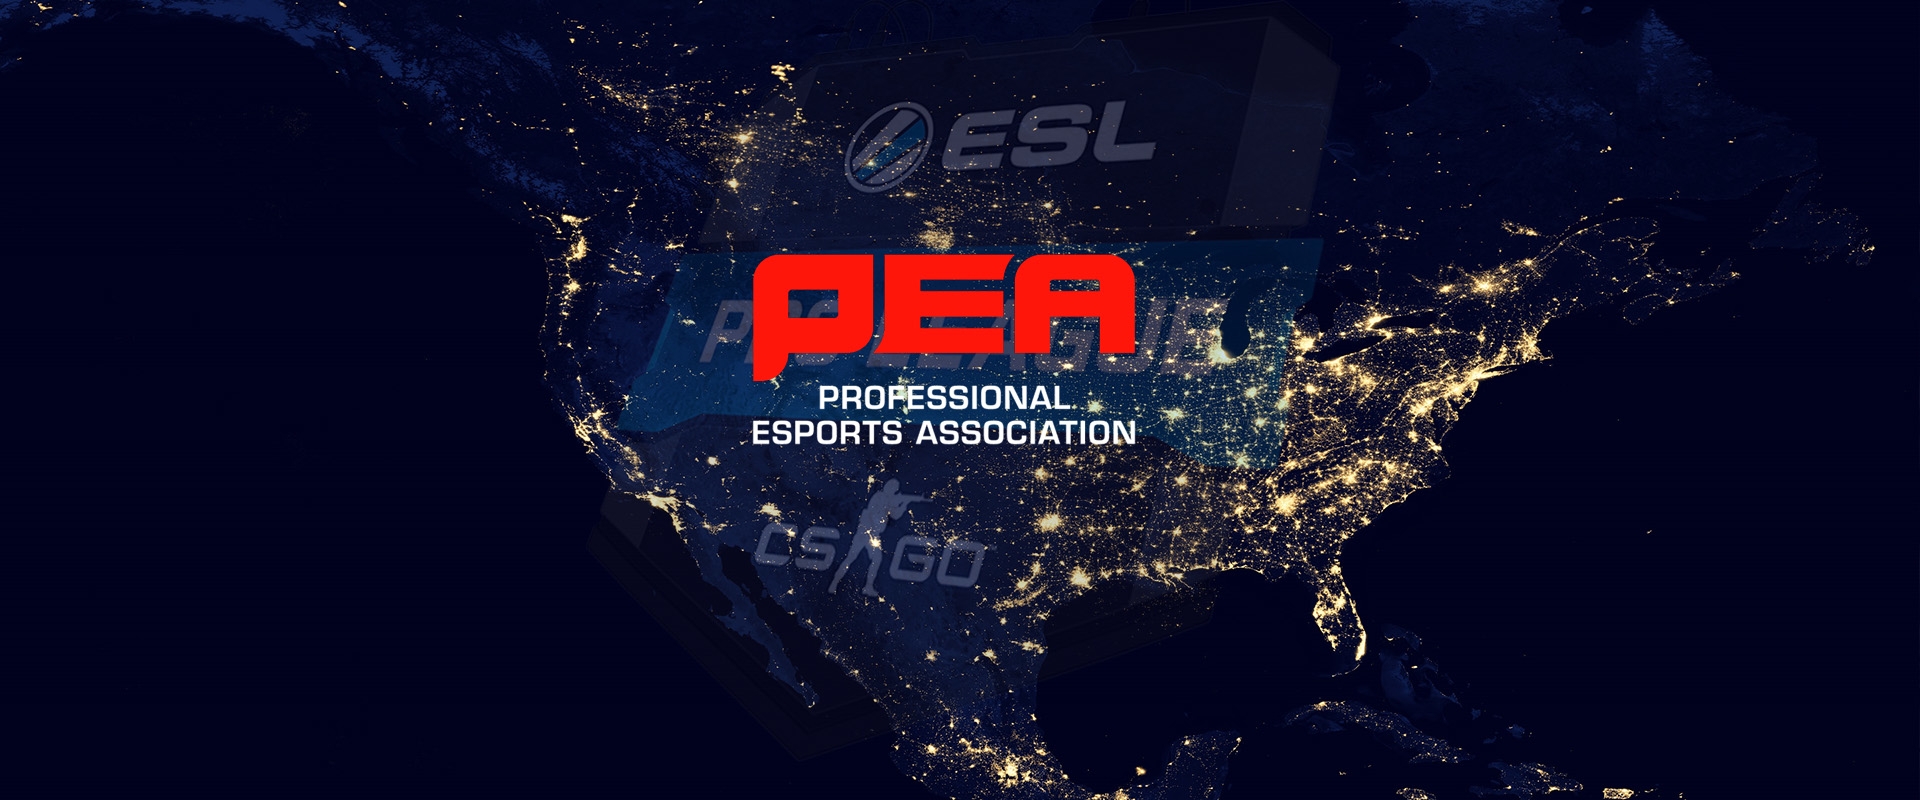 PEA-botrány: EPL vagy PEA, ez itt a kérdés!